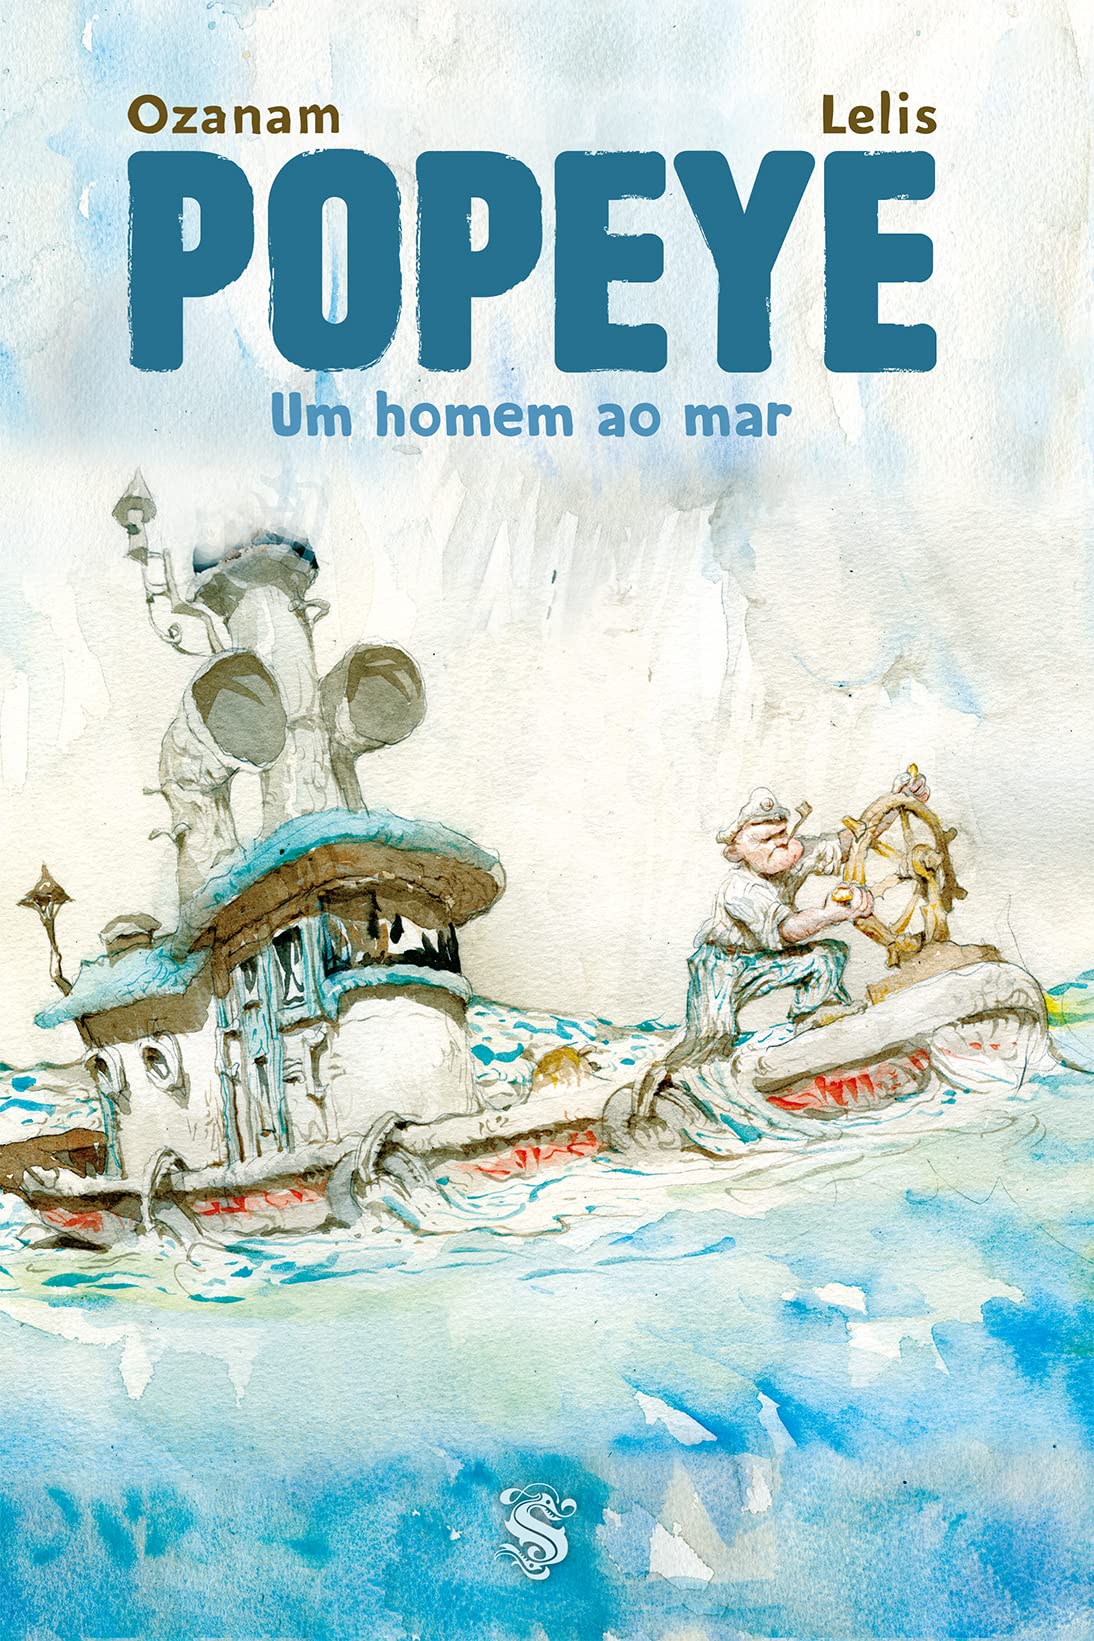 popeye-um-homem-ao-mar-ediora-skrypt-Antoine-Ozanam-e-Marcelo-Lelis